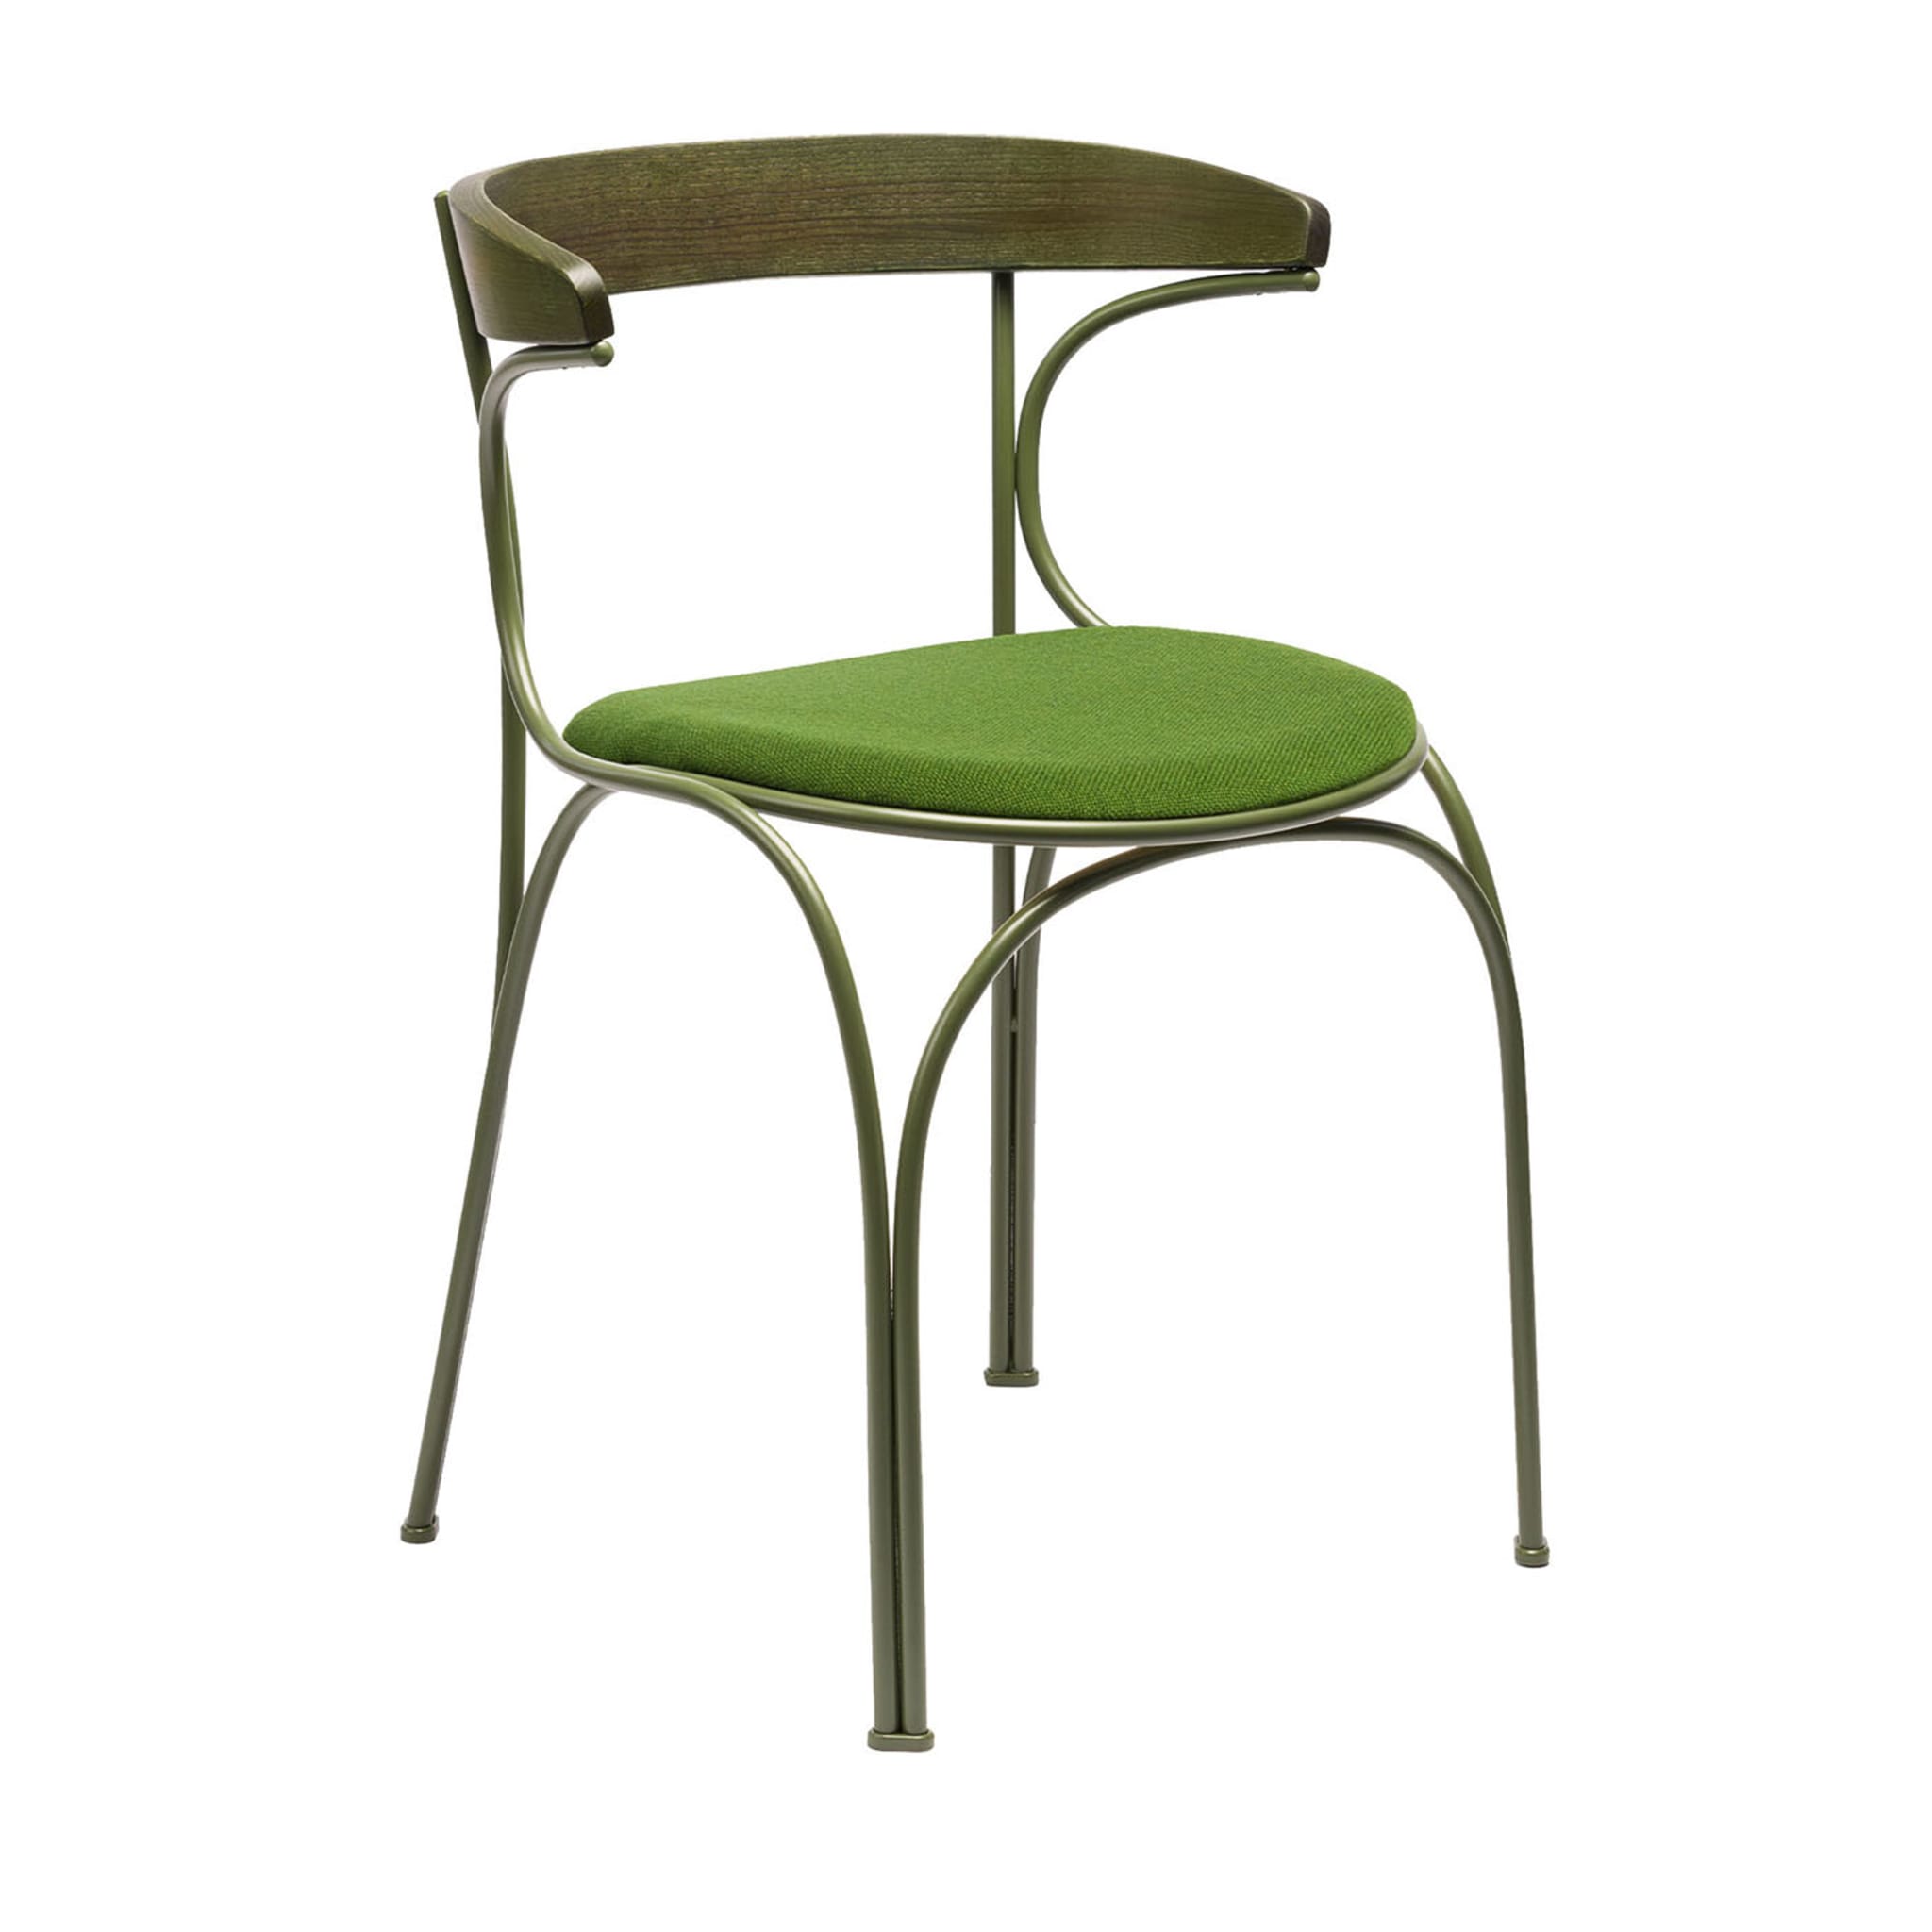 Ample Green Chair #2 par Nichetto Studio - Vue principale